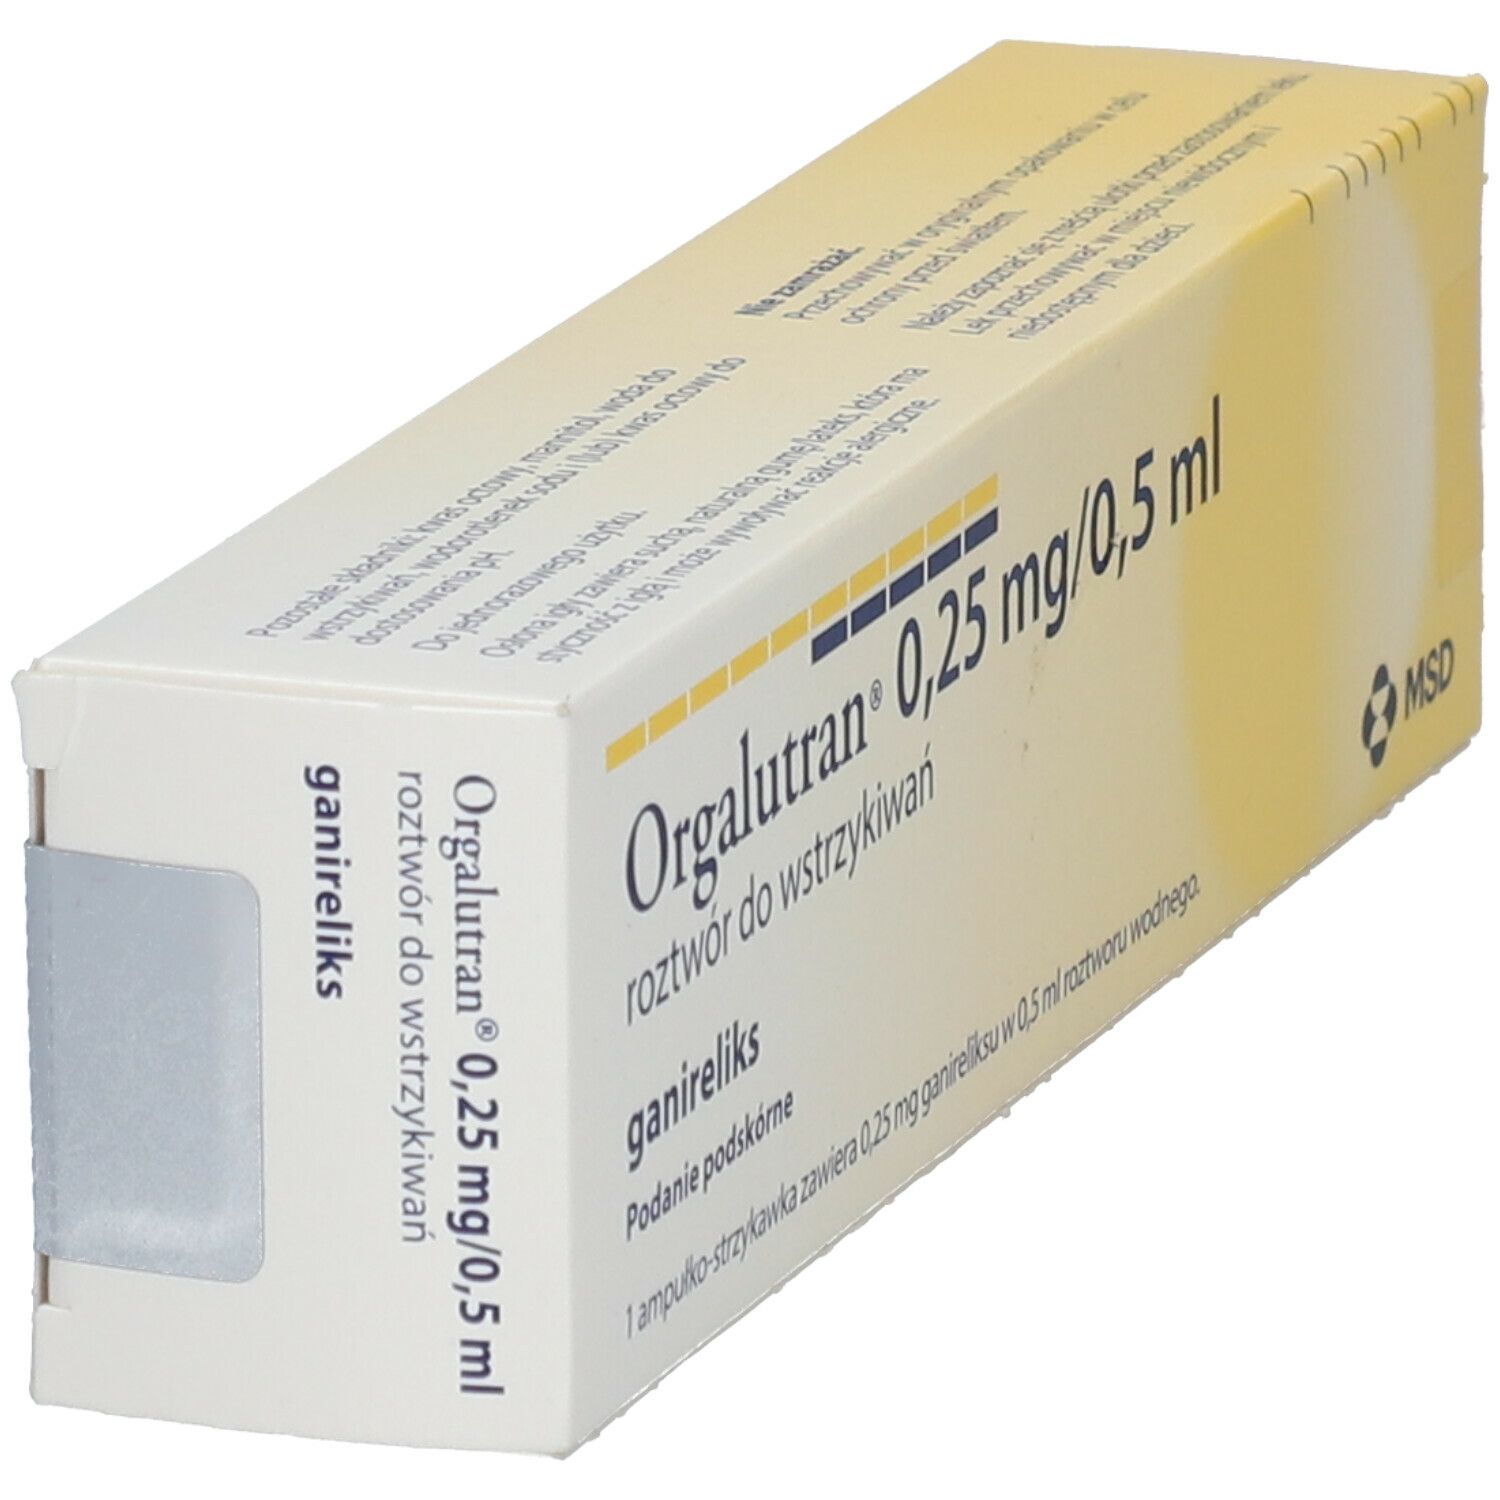 ORGALUTRAN 0,25 mg/0,5 ml Inj.-Lsg.i.e.Fertigspr.